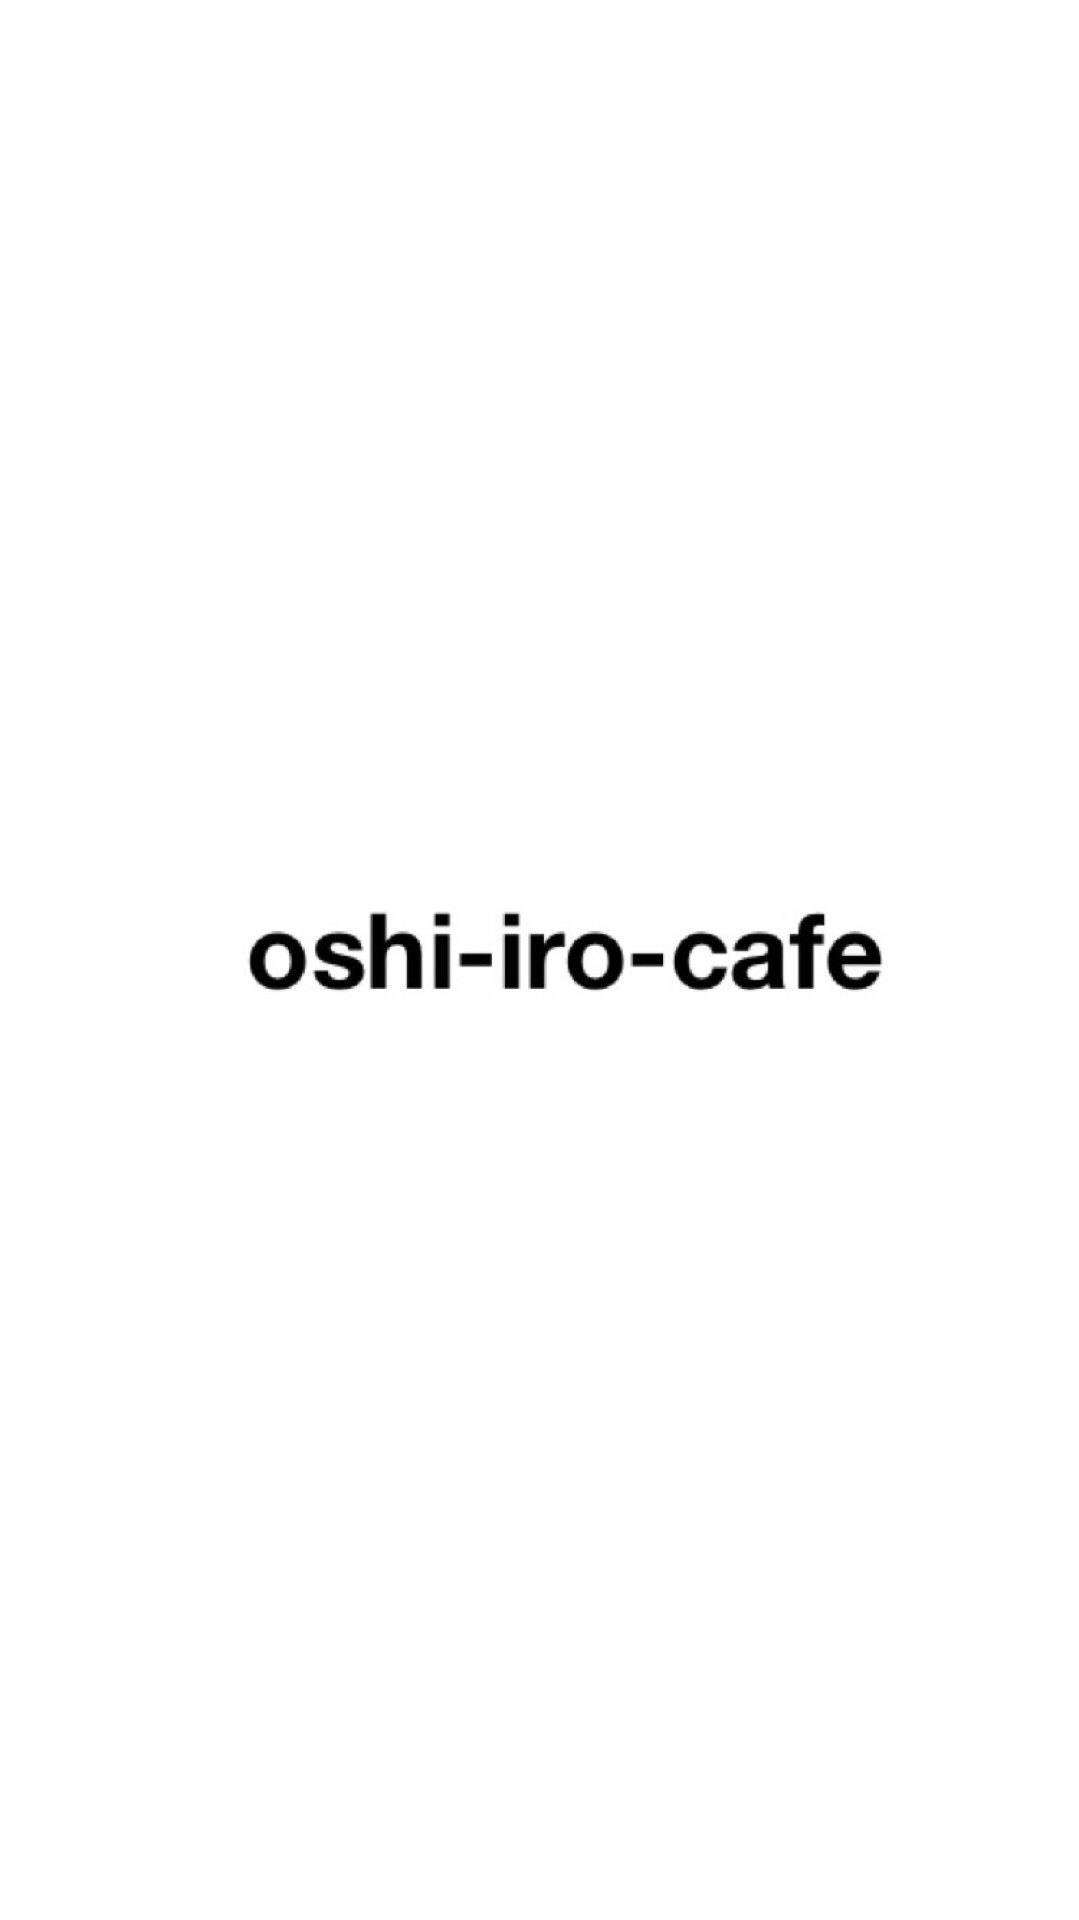 oshi-iro-cafe